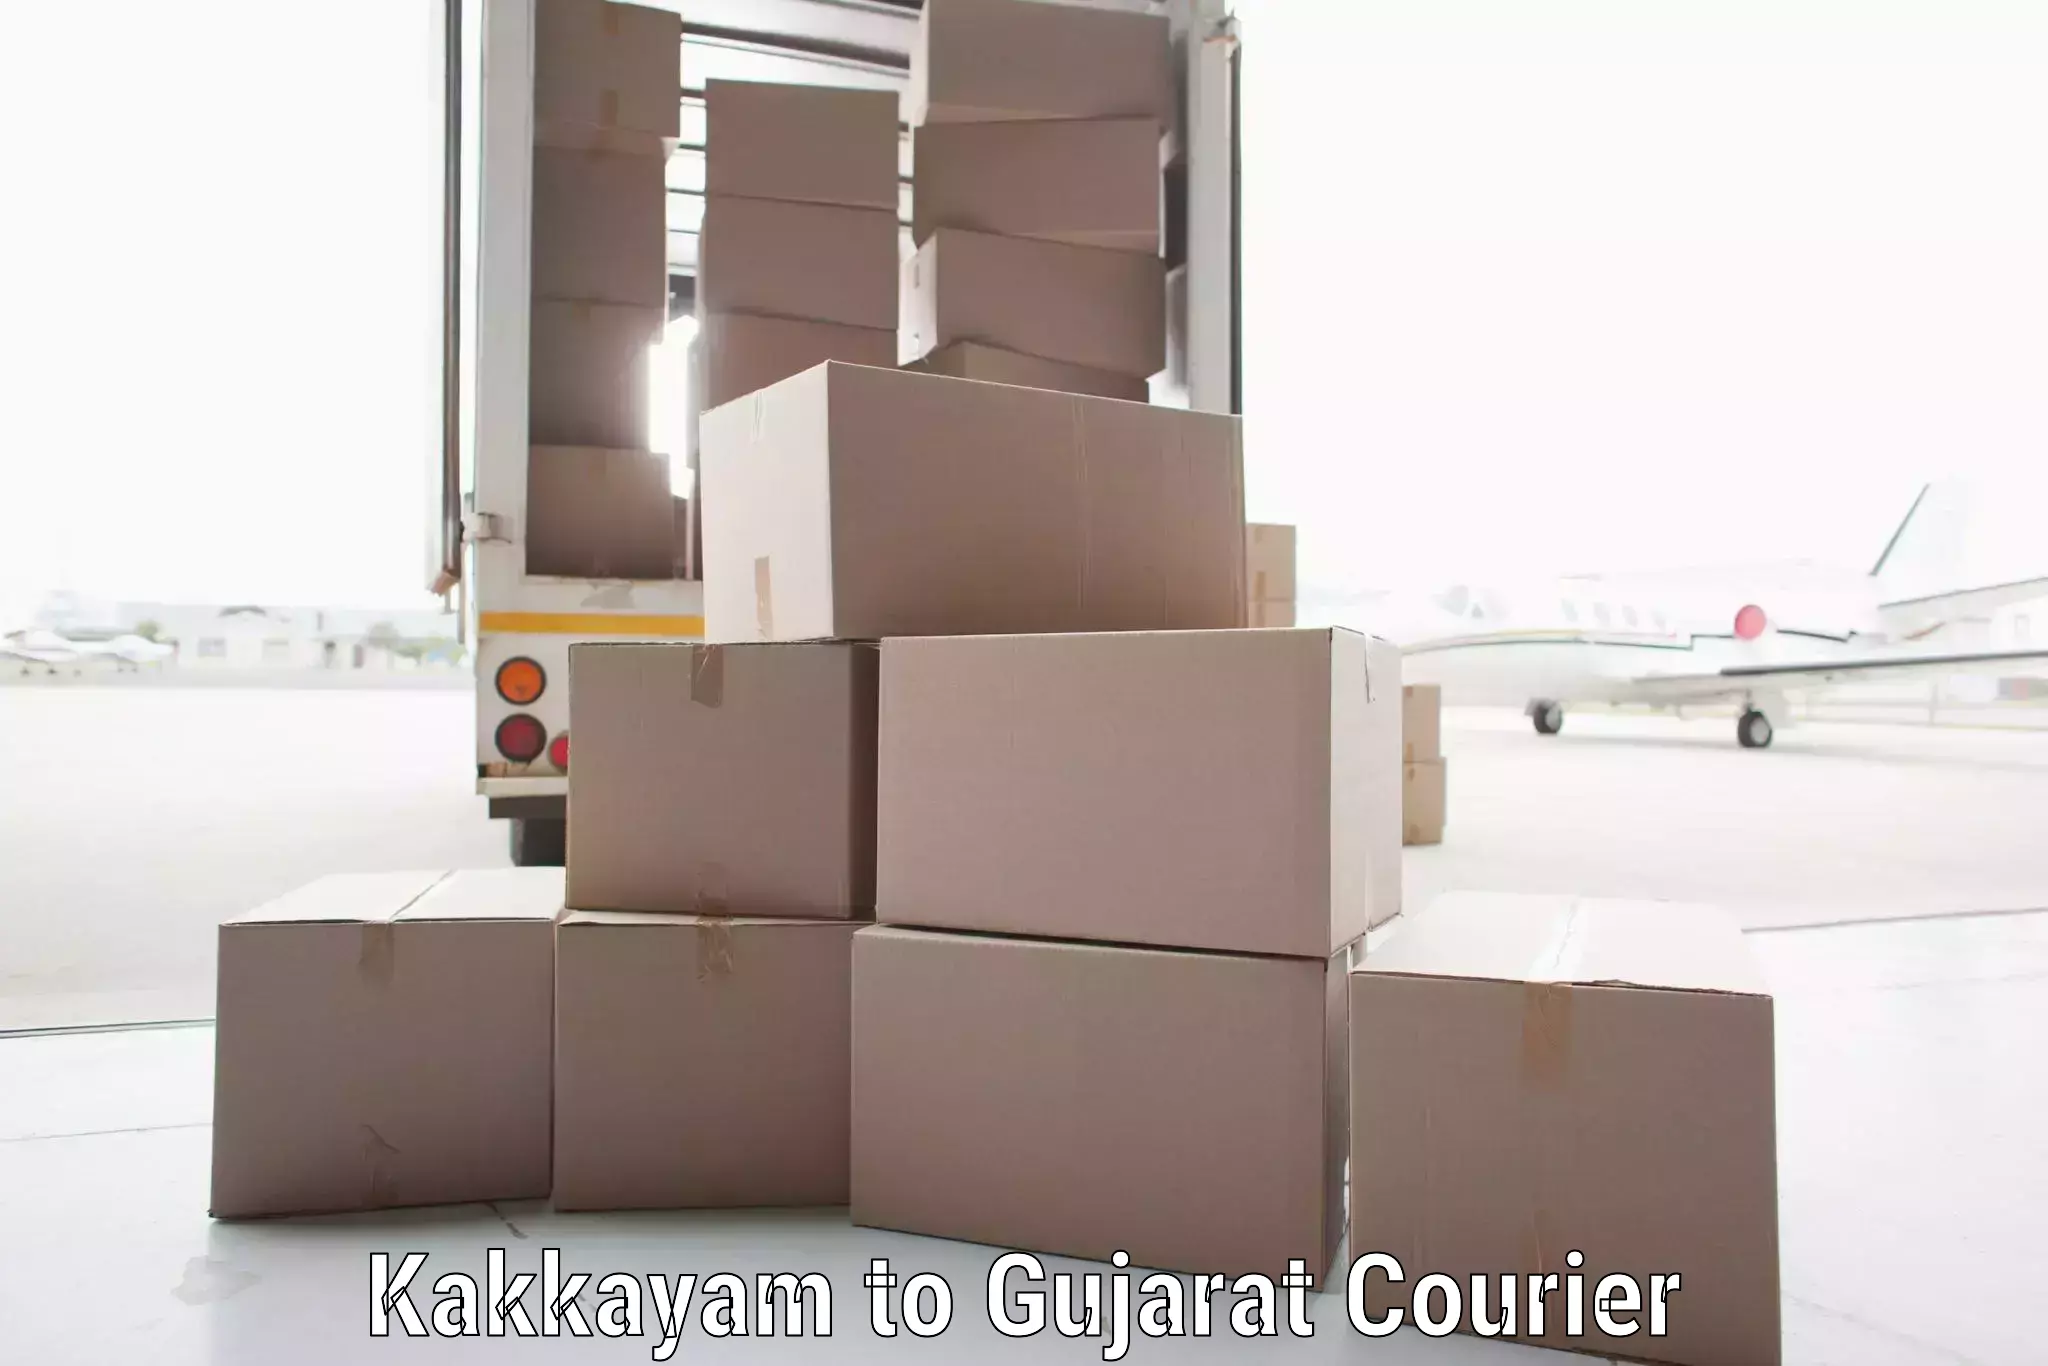 Professional courier handling in Kakkayam to Junagadh